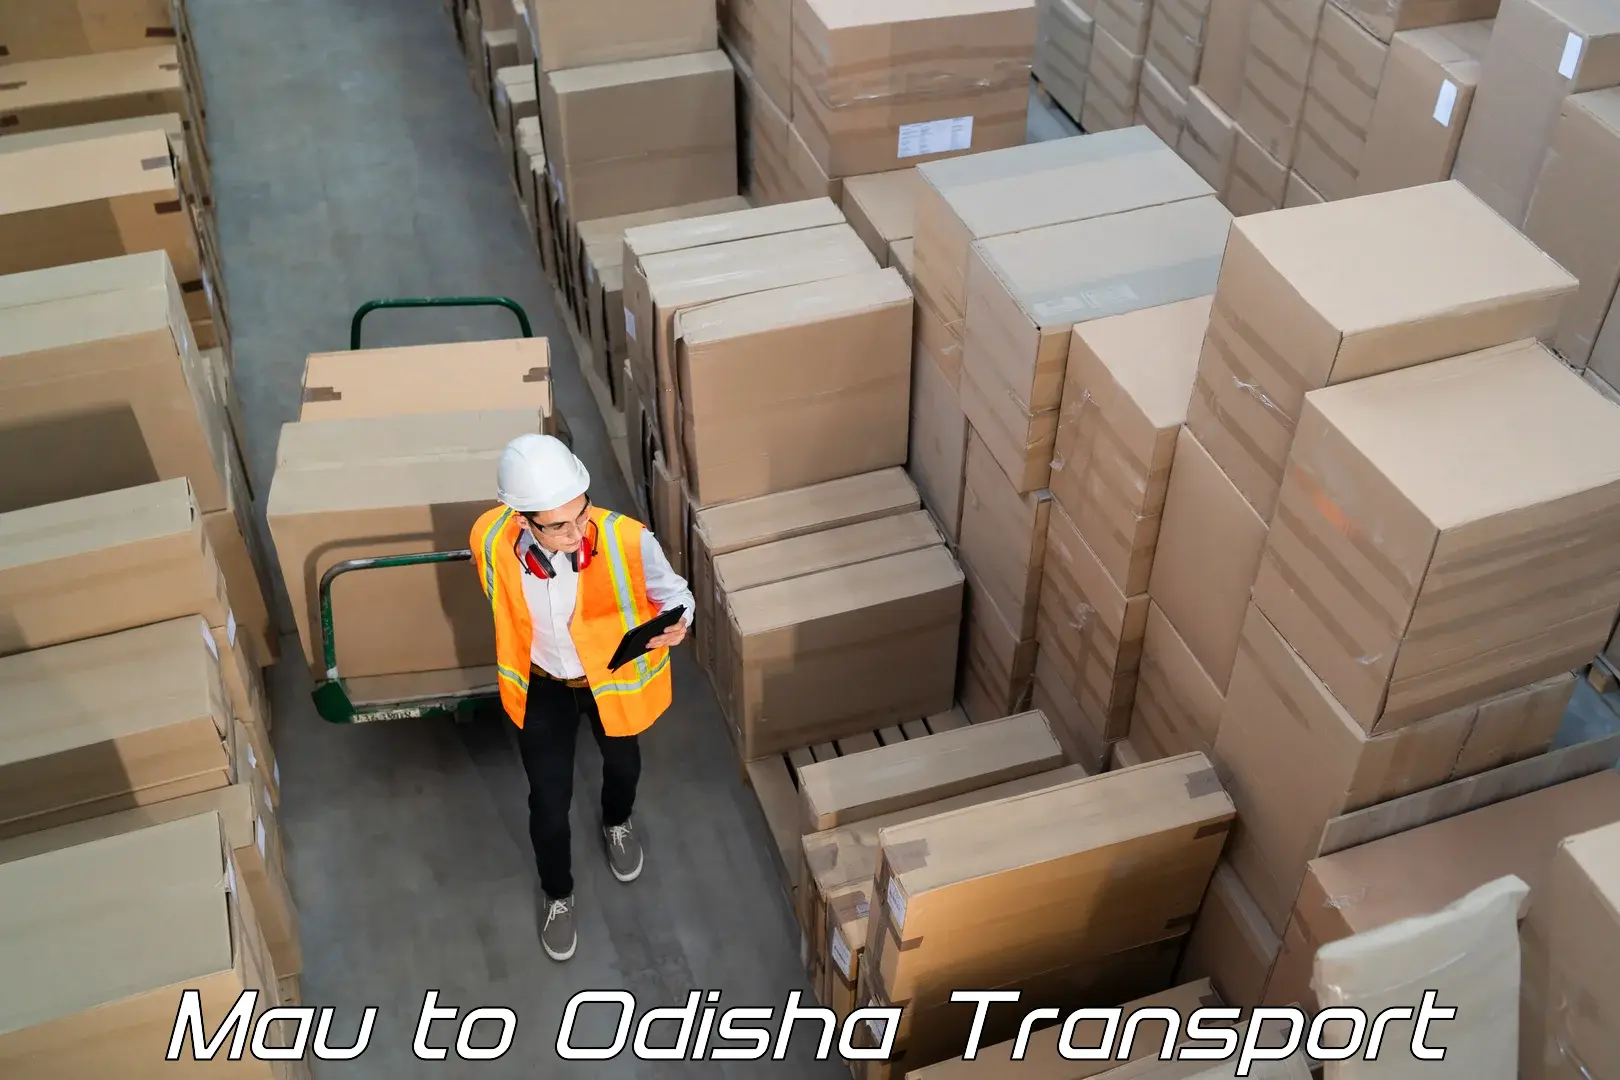 All India transport service Mau to Odisha